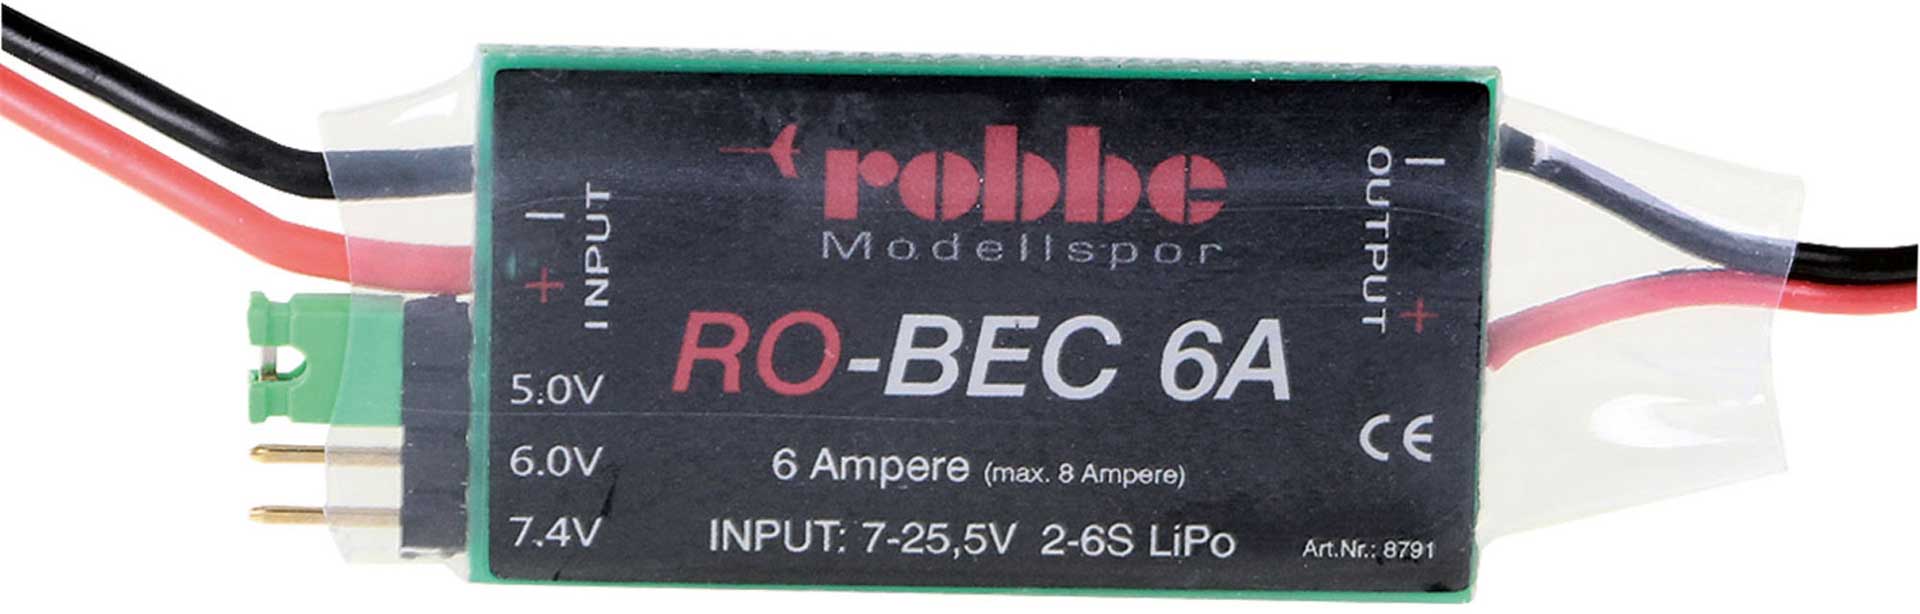 Robbe Modellsport RO-BEC 6A EMPFÄNGERSTROMVERSORGUNG